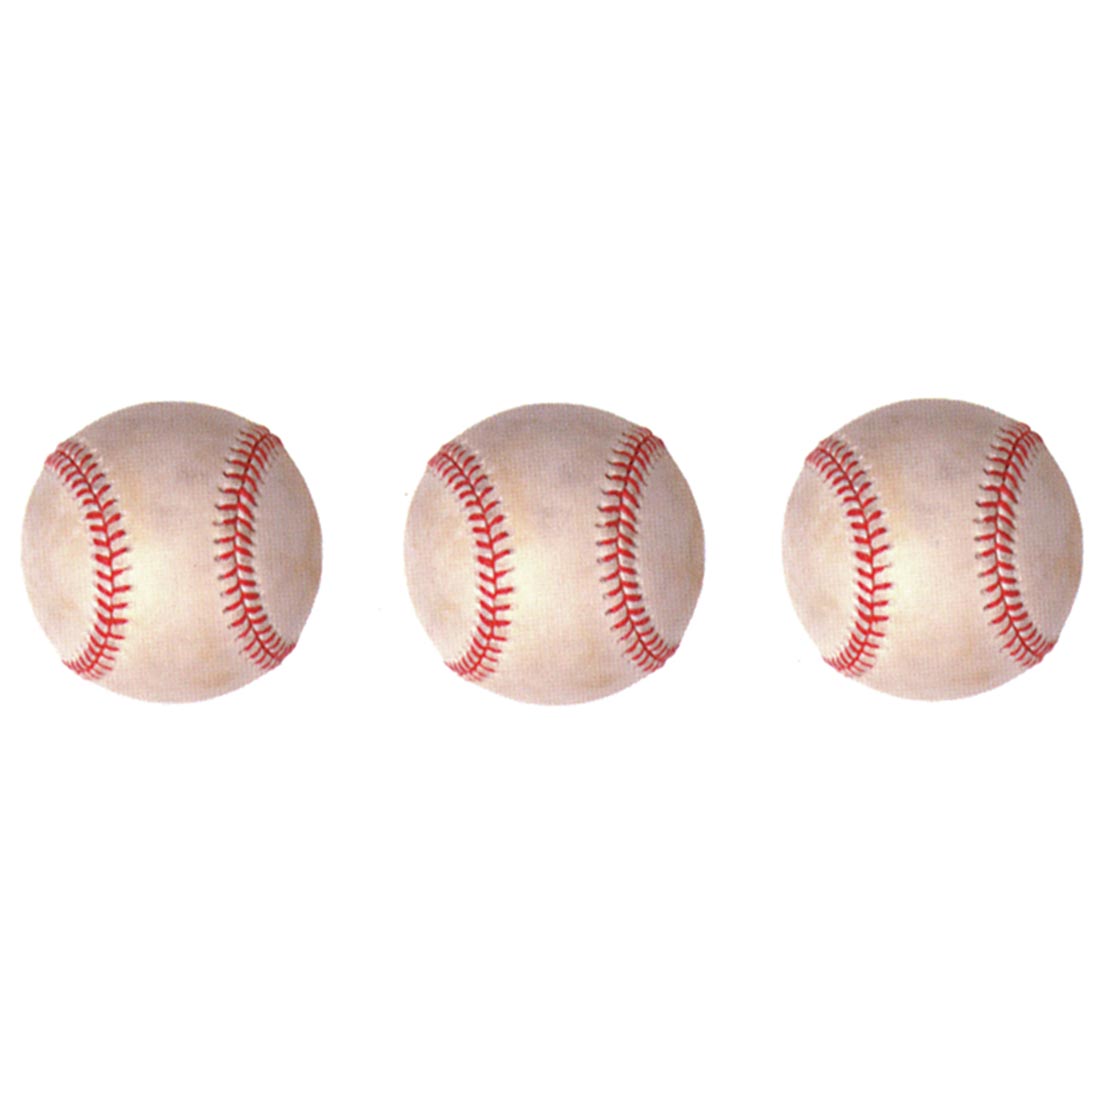 Baseball Stickers by Eureka